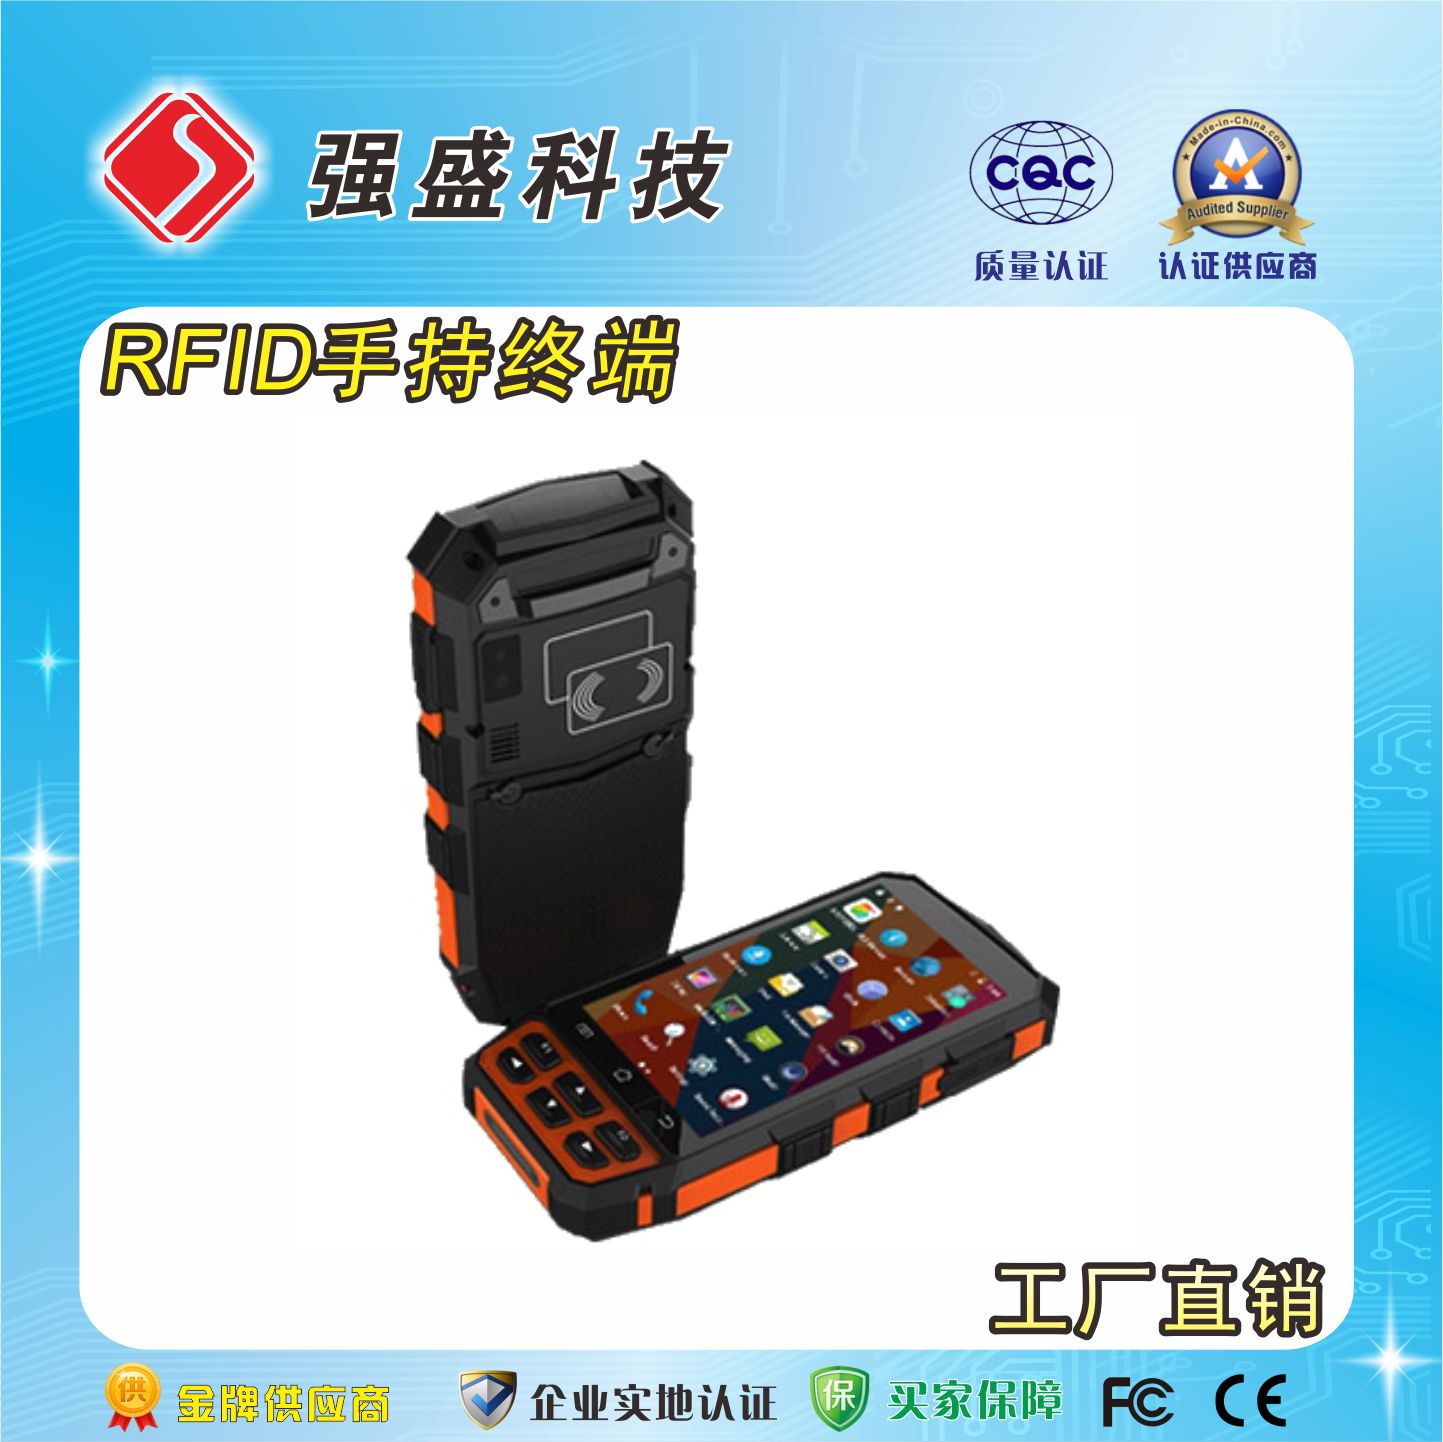 厂家供应UHF安卓手持机 QS-9222 手持式RFID读写器3